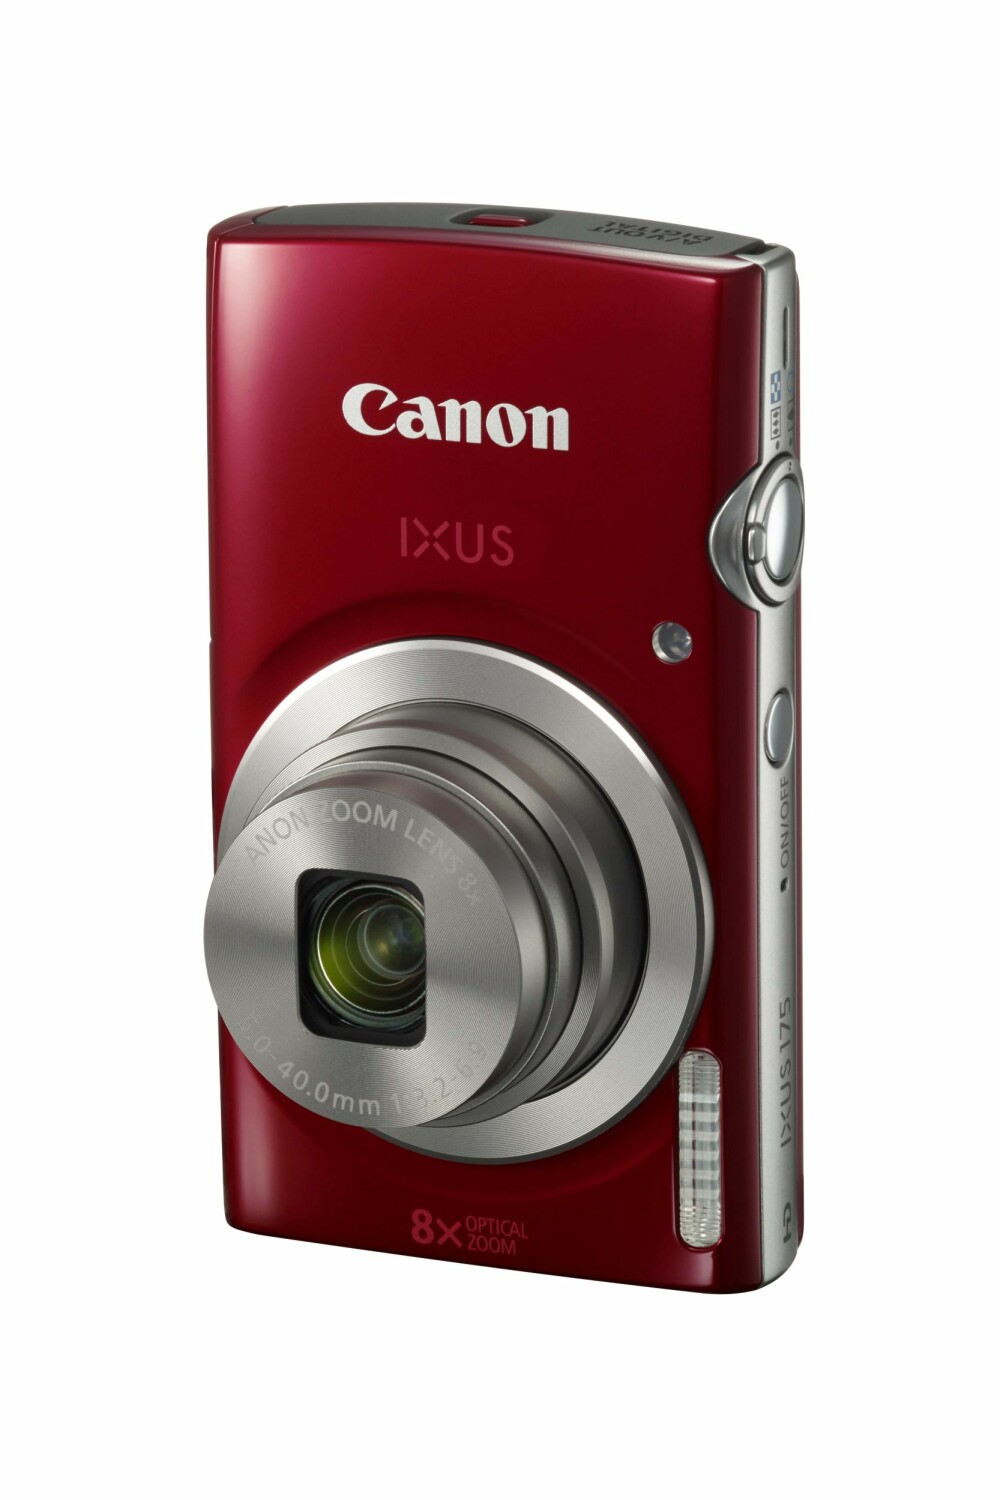 BILLIG: Canon Ixus 175 har 8x optisk zoom og 20 megapikslers oppløsning. Prisen er på lave 1019 kroner, og kameraet kommer i butikk i januar.